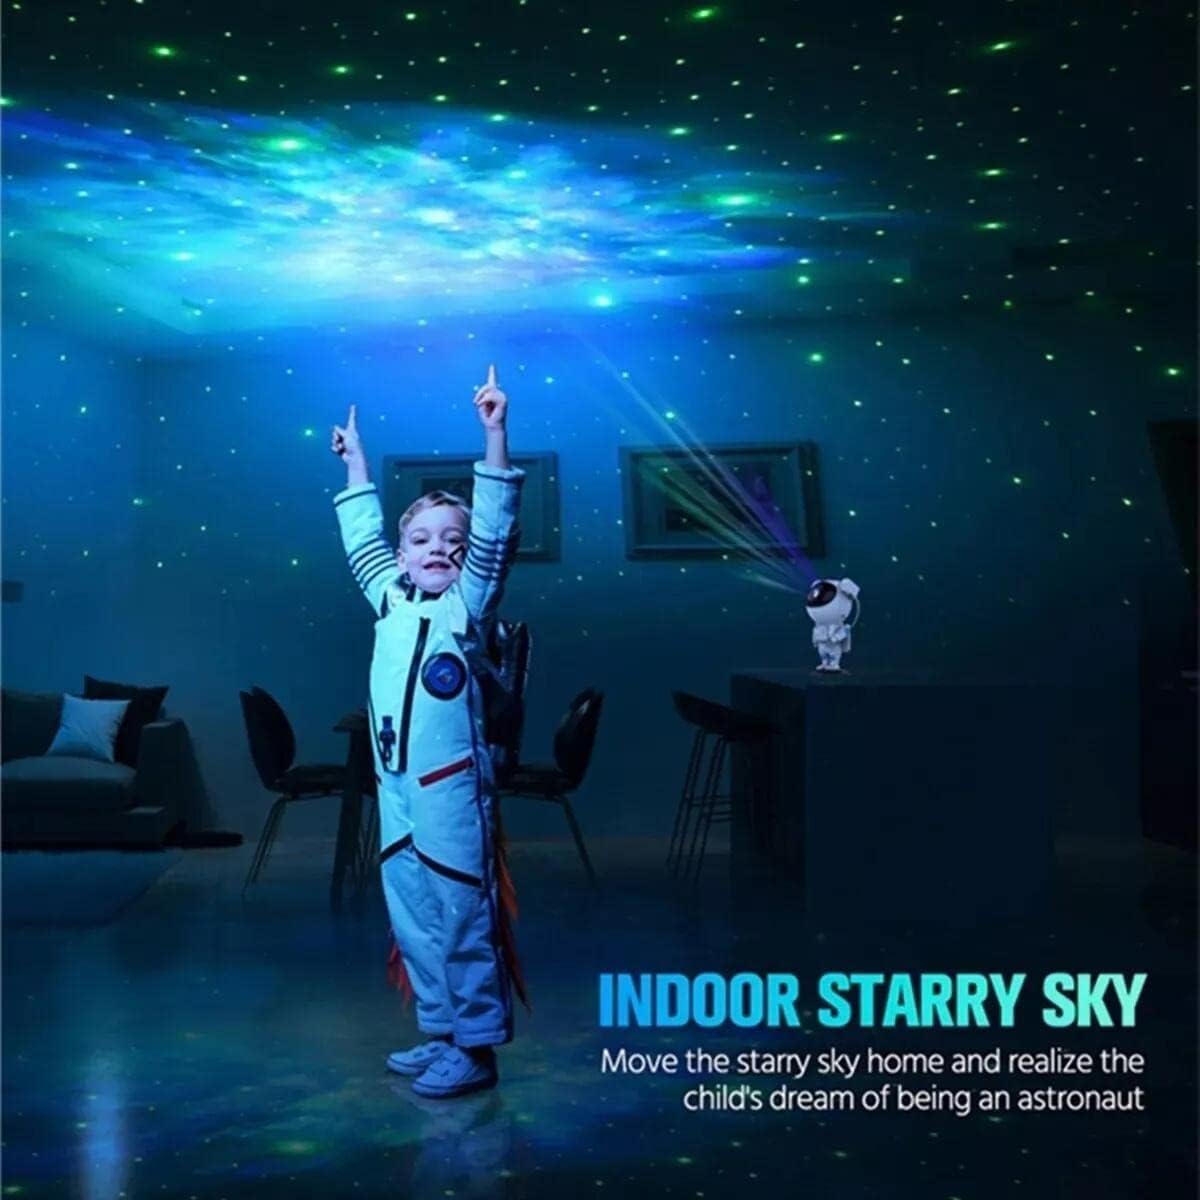 Star Night Lights Projecteur Galaxy Projecteur 360 Planétarium Réglable  Night Sky Light Projecteur pour Enfants Chambre Home Cinéma